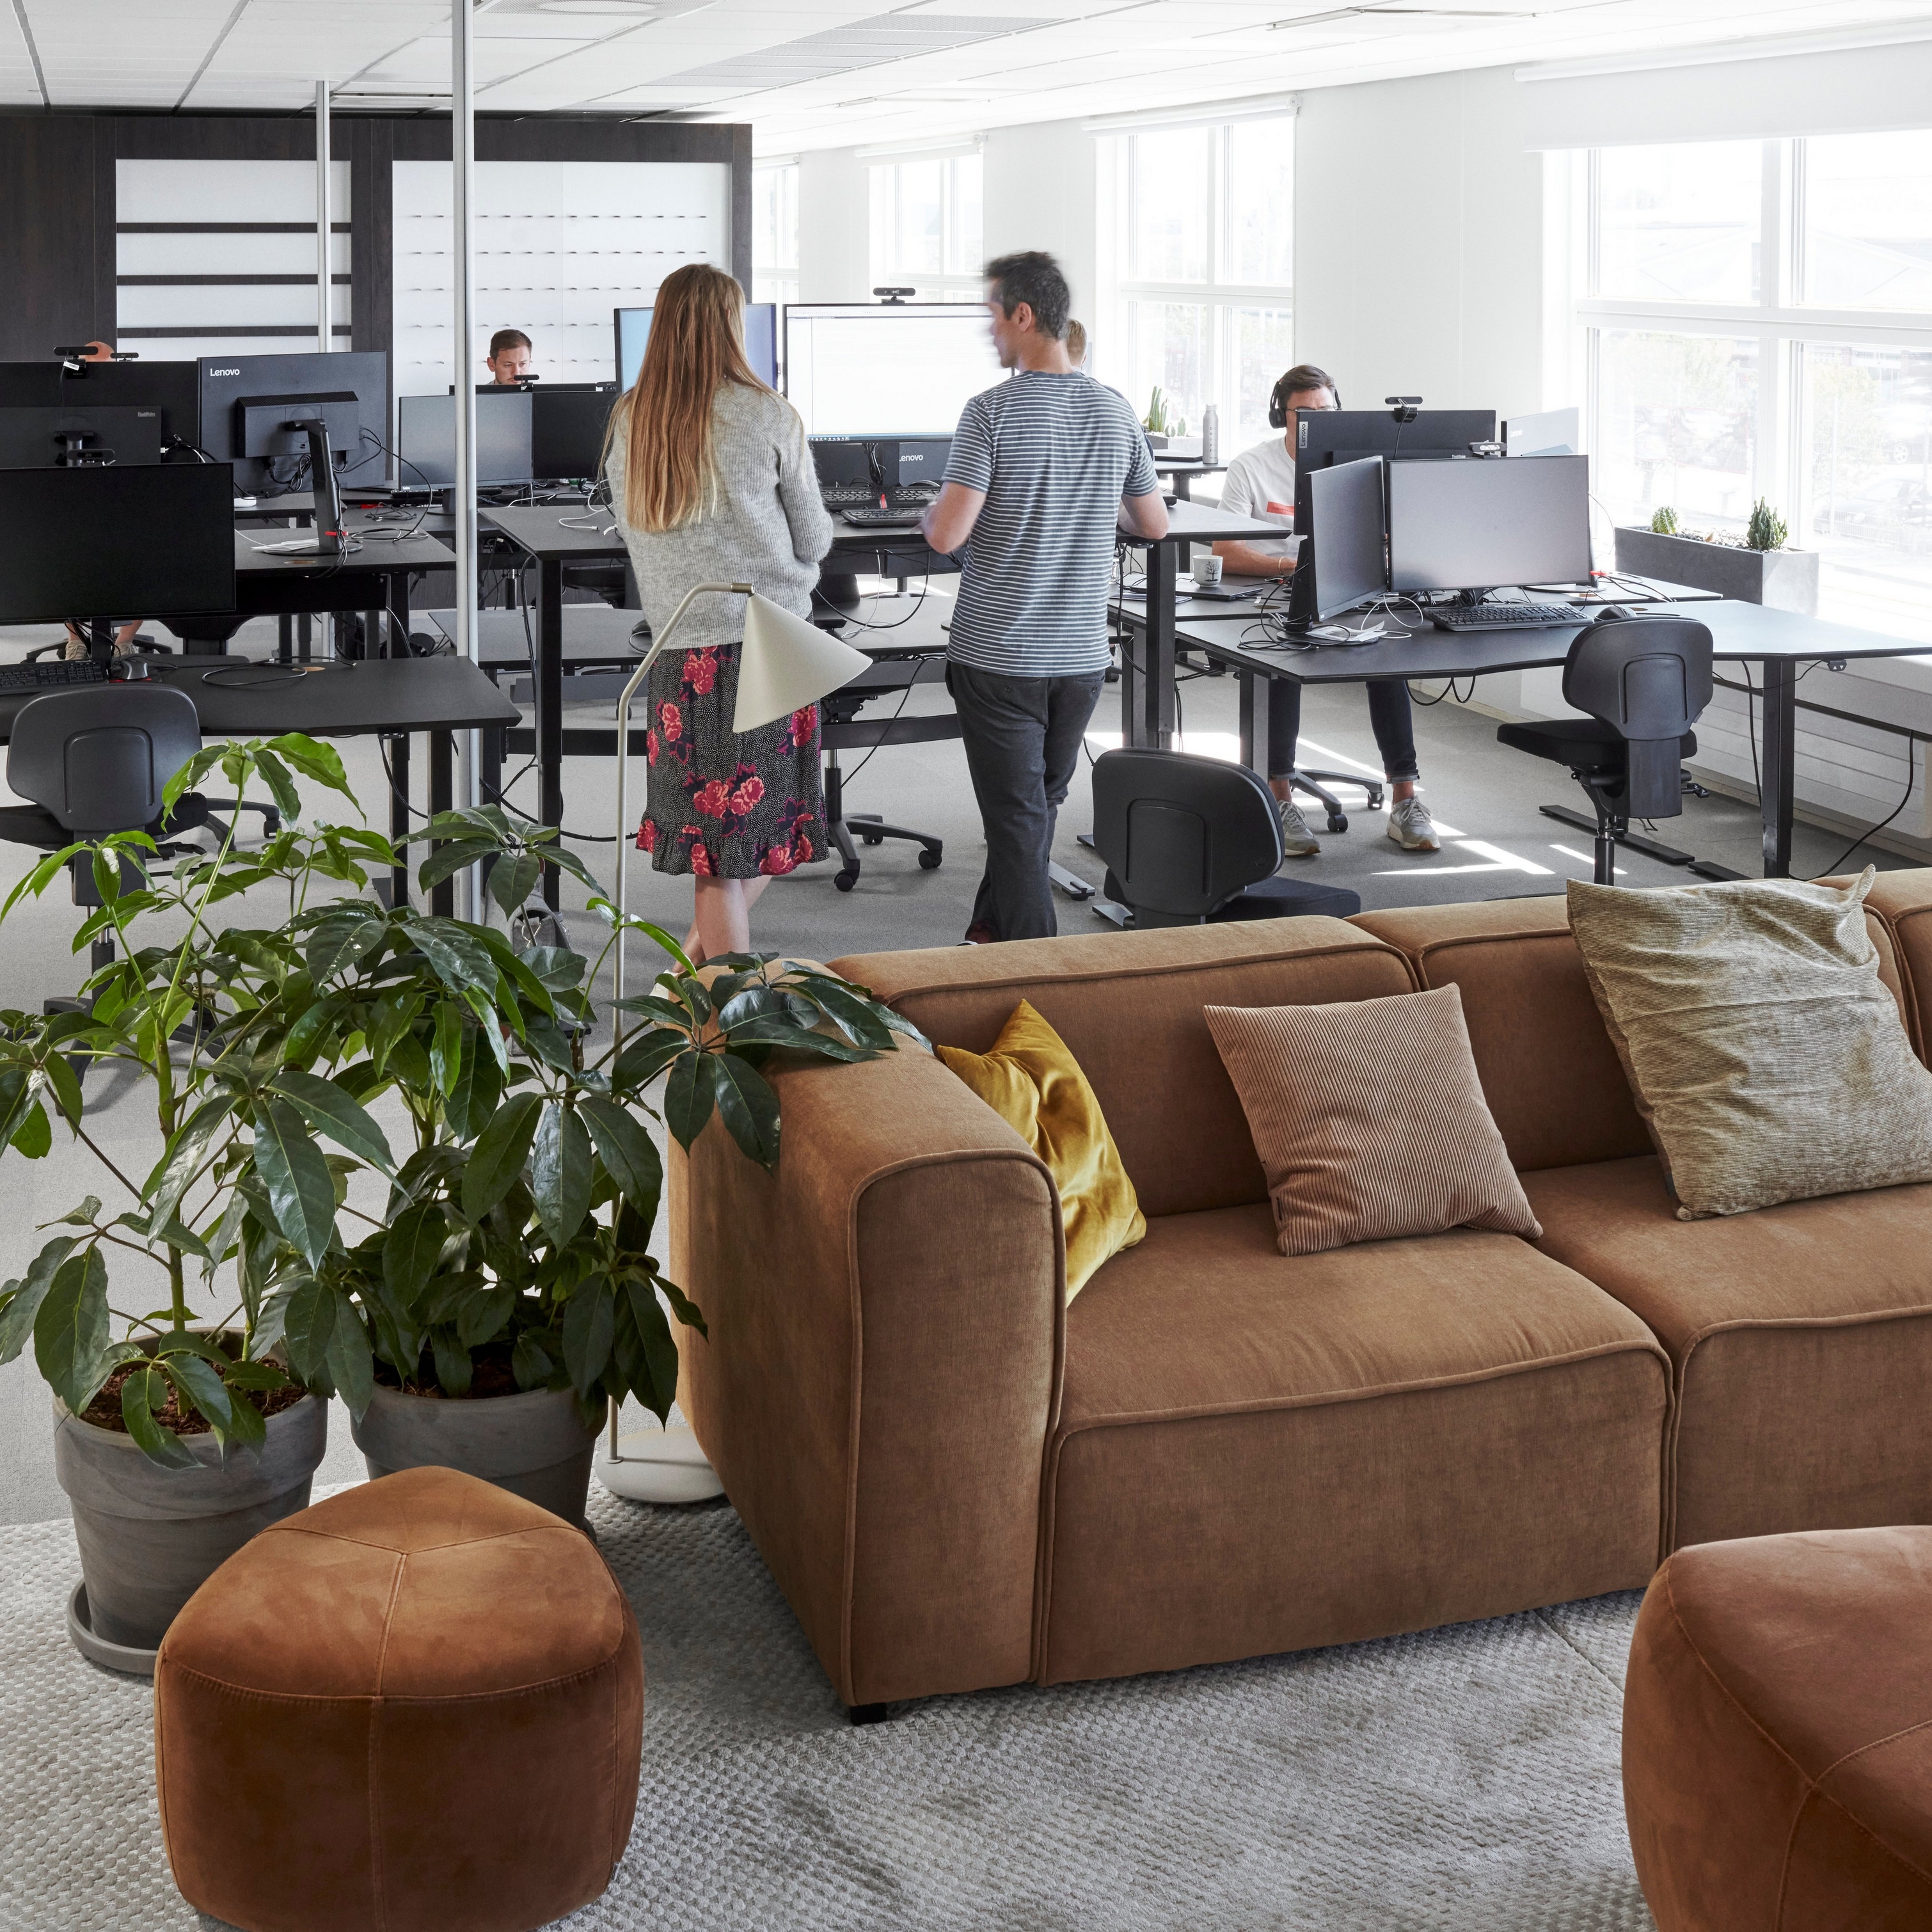 Современное офисное пространство BoConcept в штаб-квартире с сотрудниками, компьютерами, растениями и коричневым диваном Carmo.